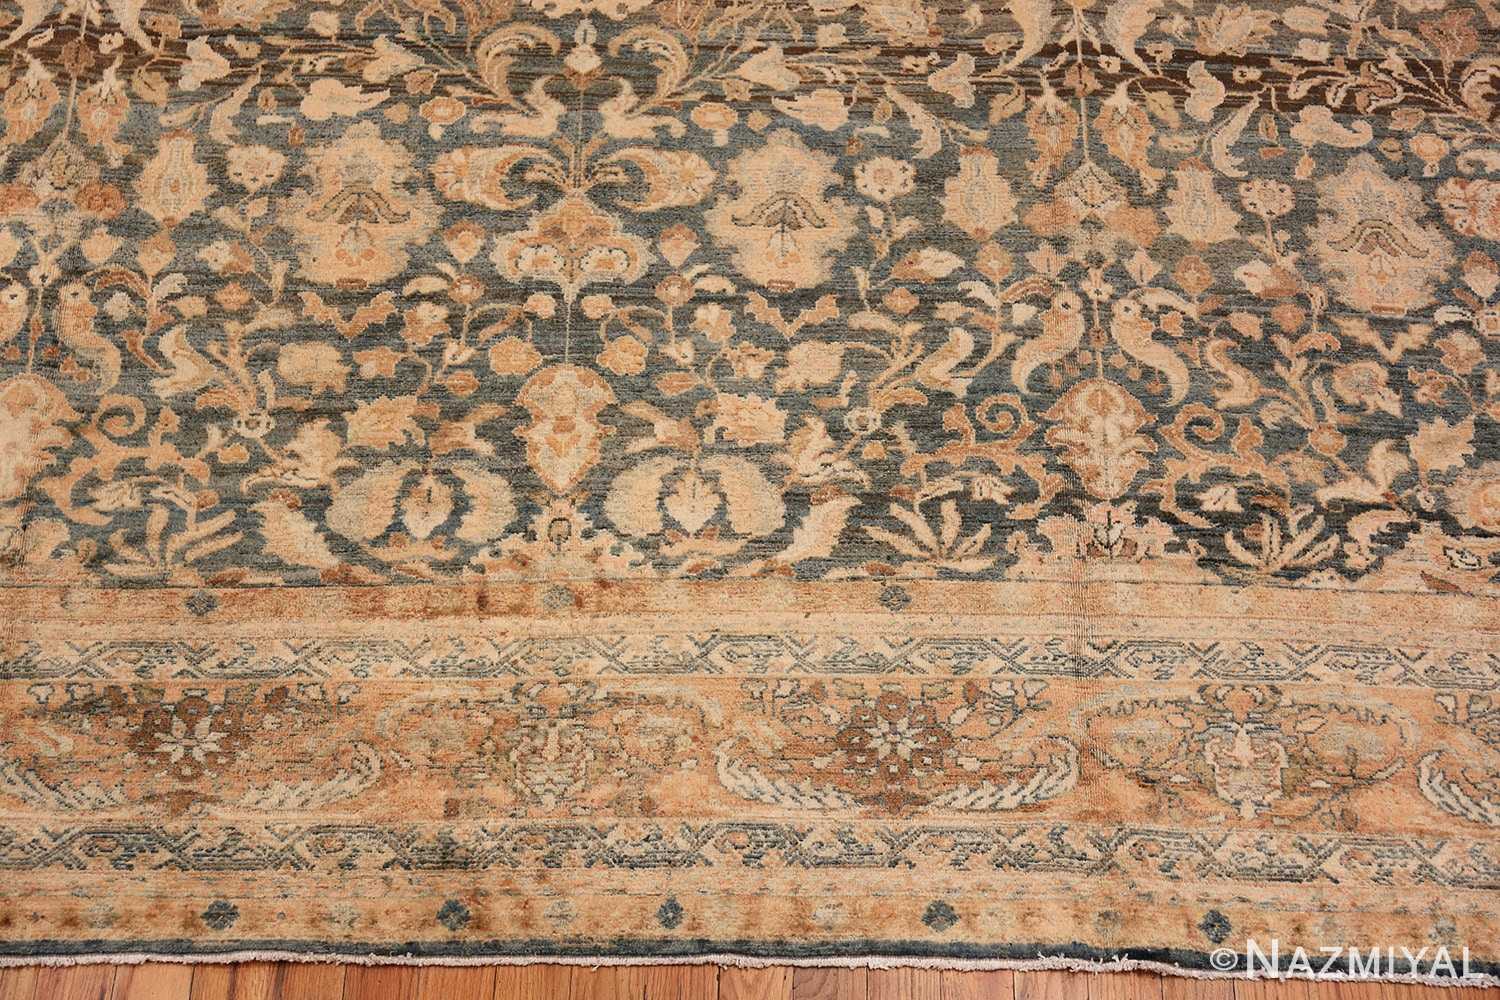 Border Large decorative Antique Persian Malayan rug 50339 by Nazmiyal